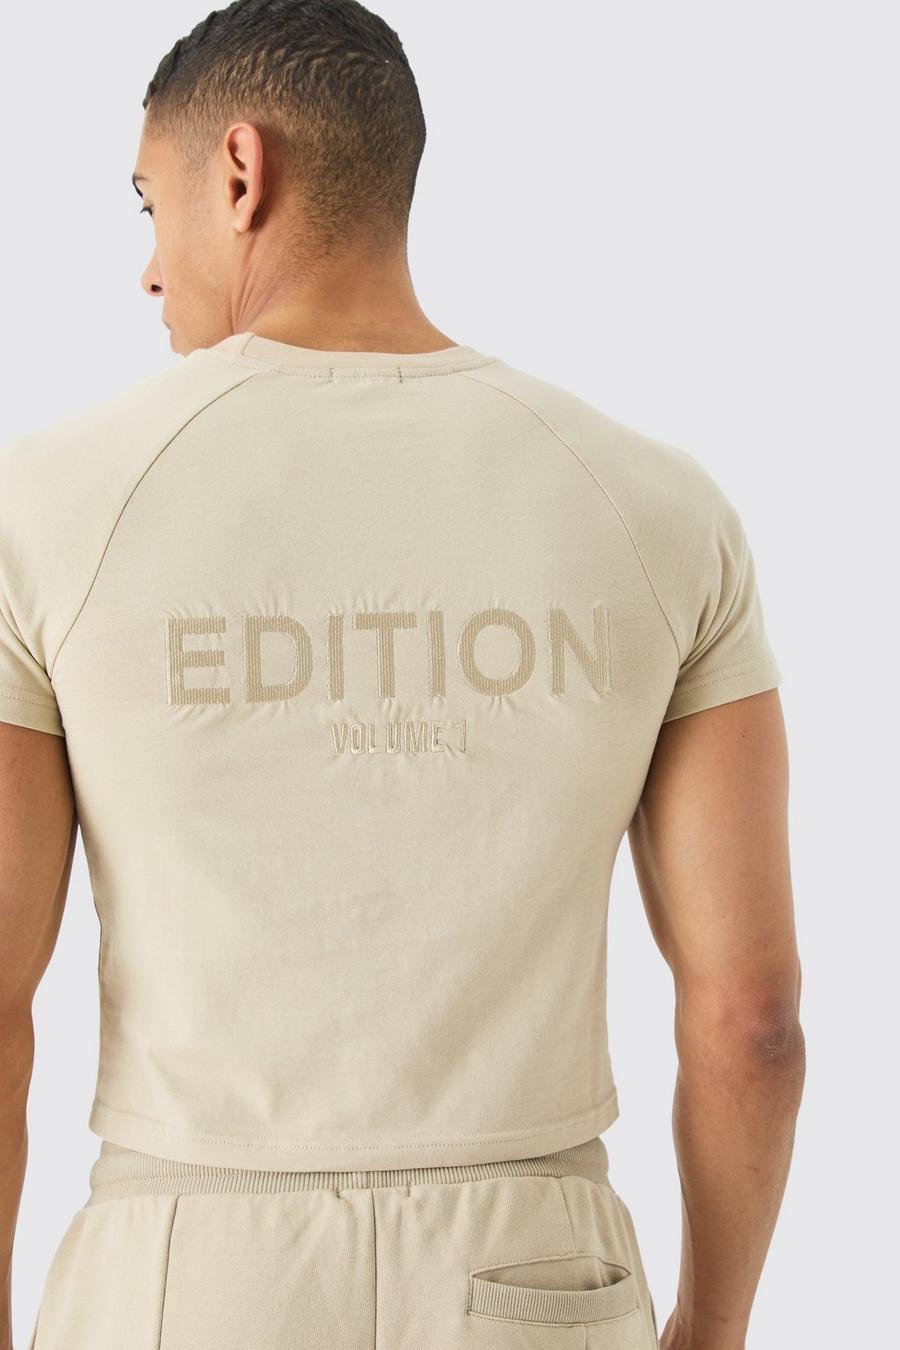 Camiseta encogida gruesa con cuello extendido de EDITION, Stone